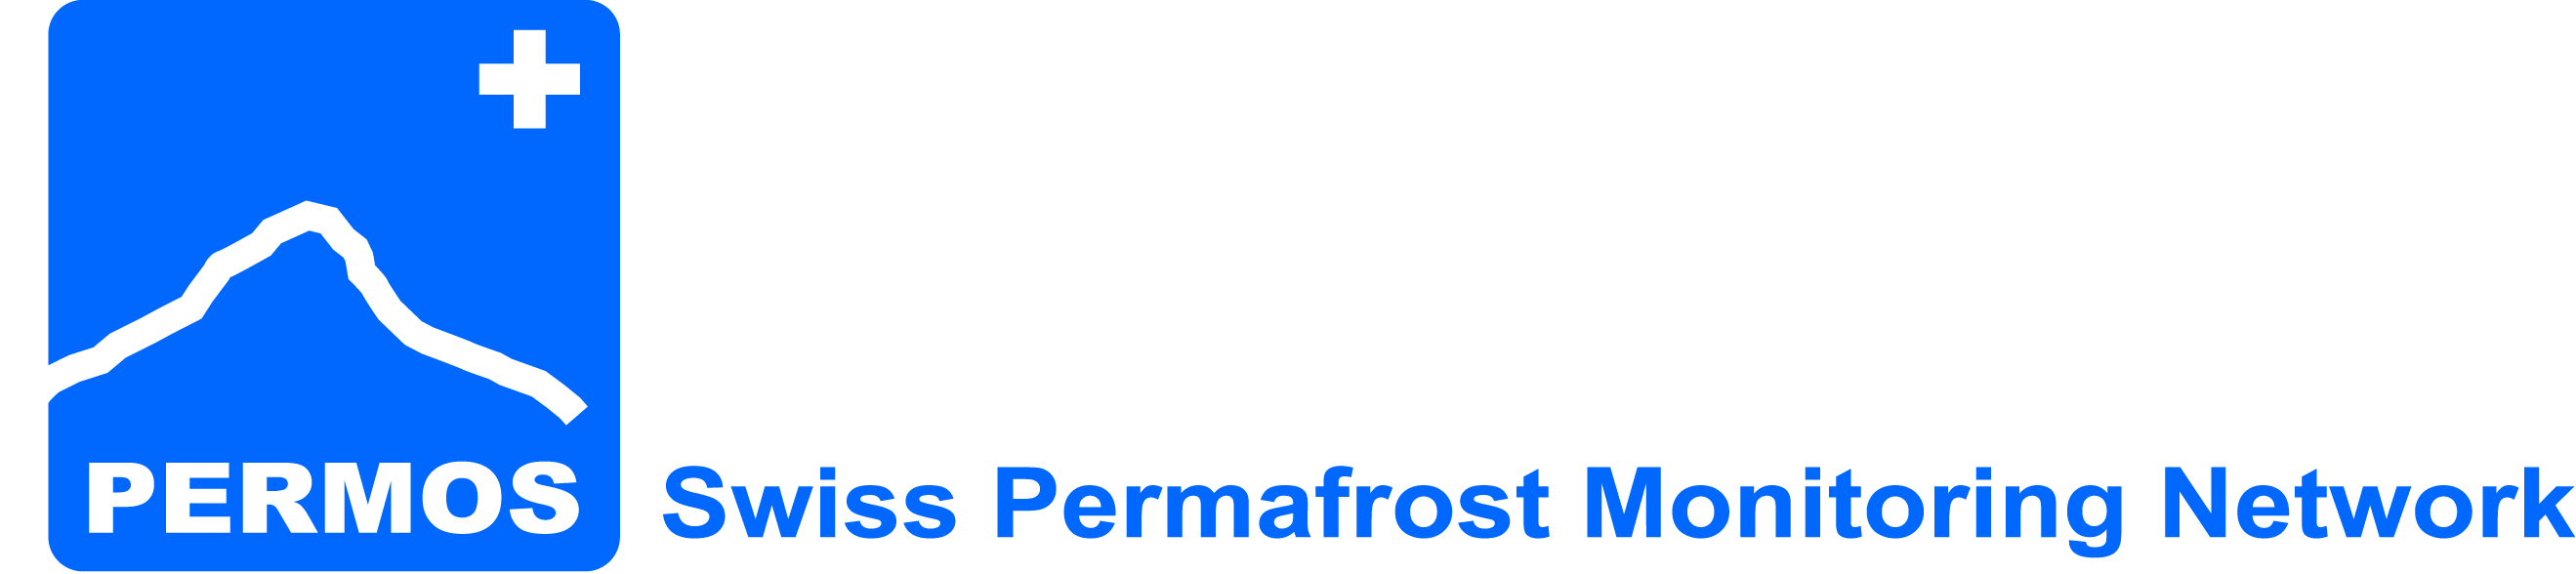 PERMOS Logo